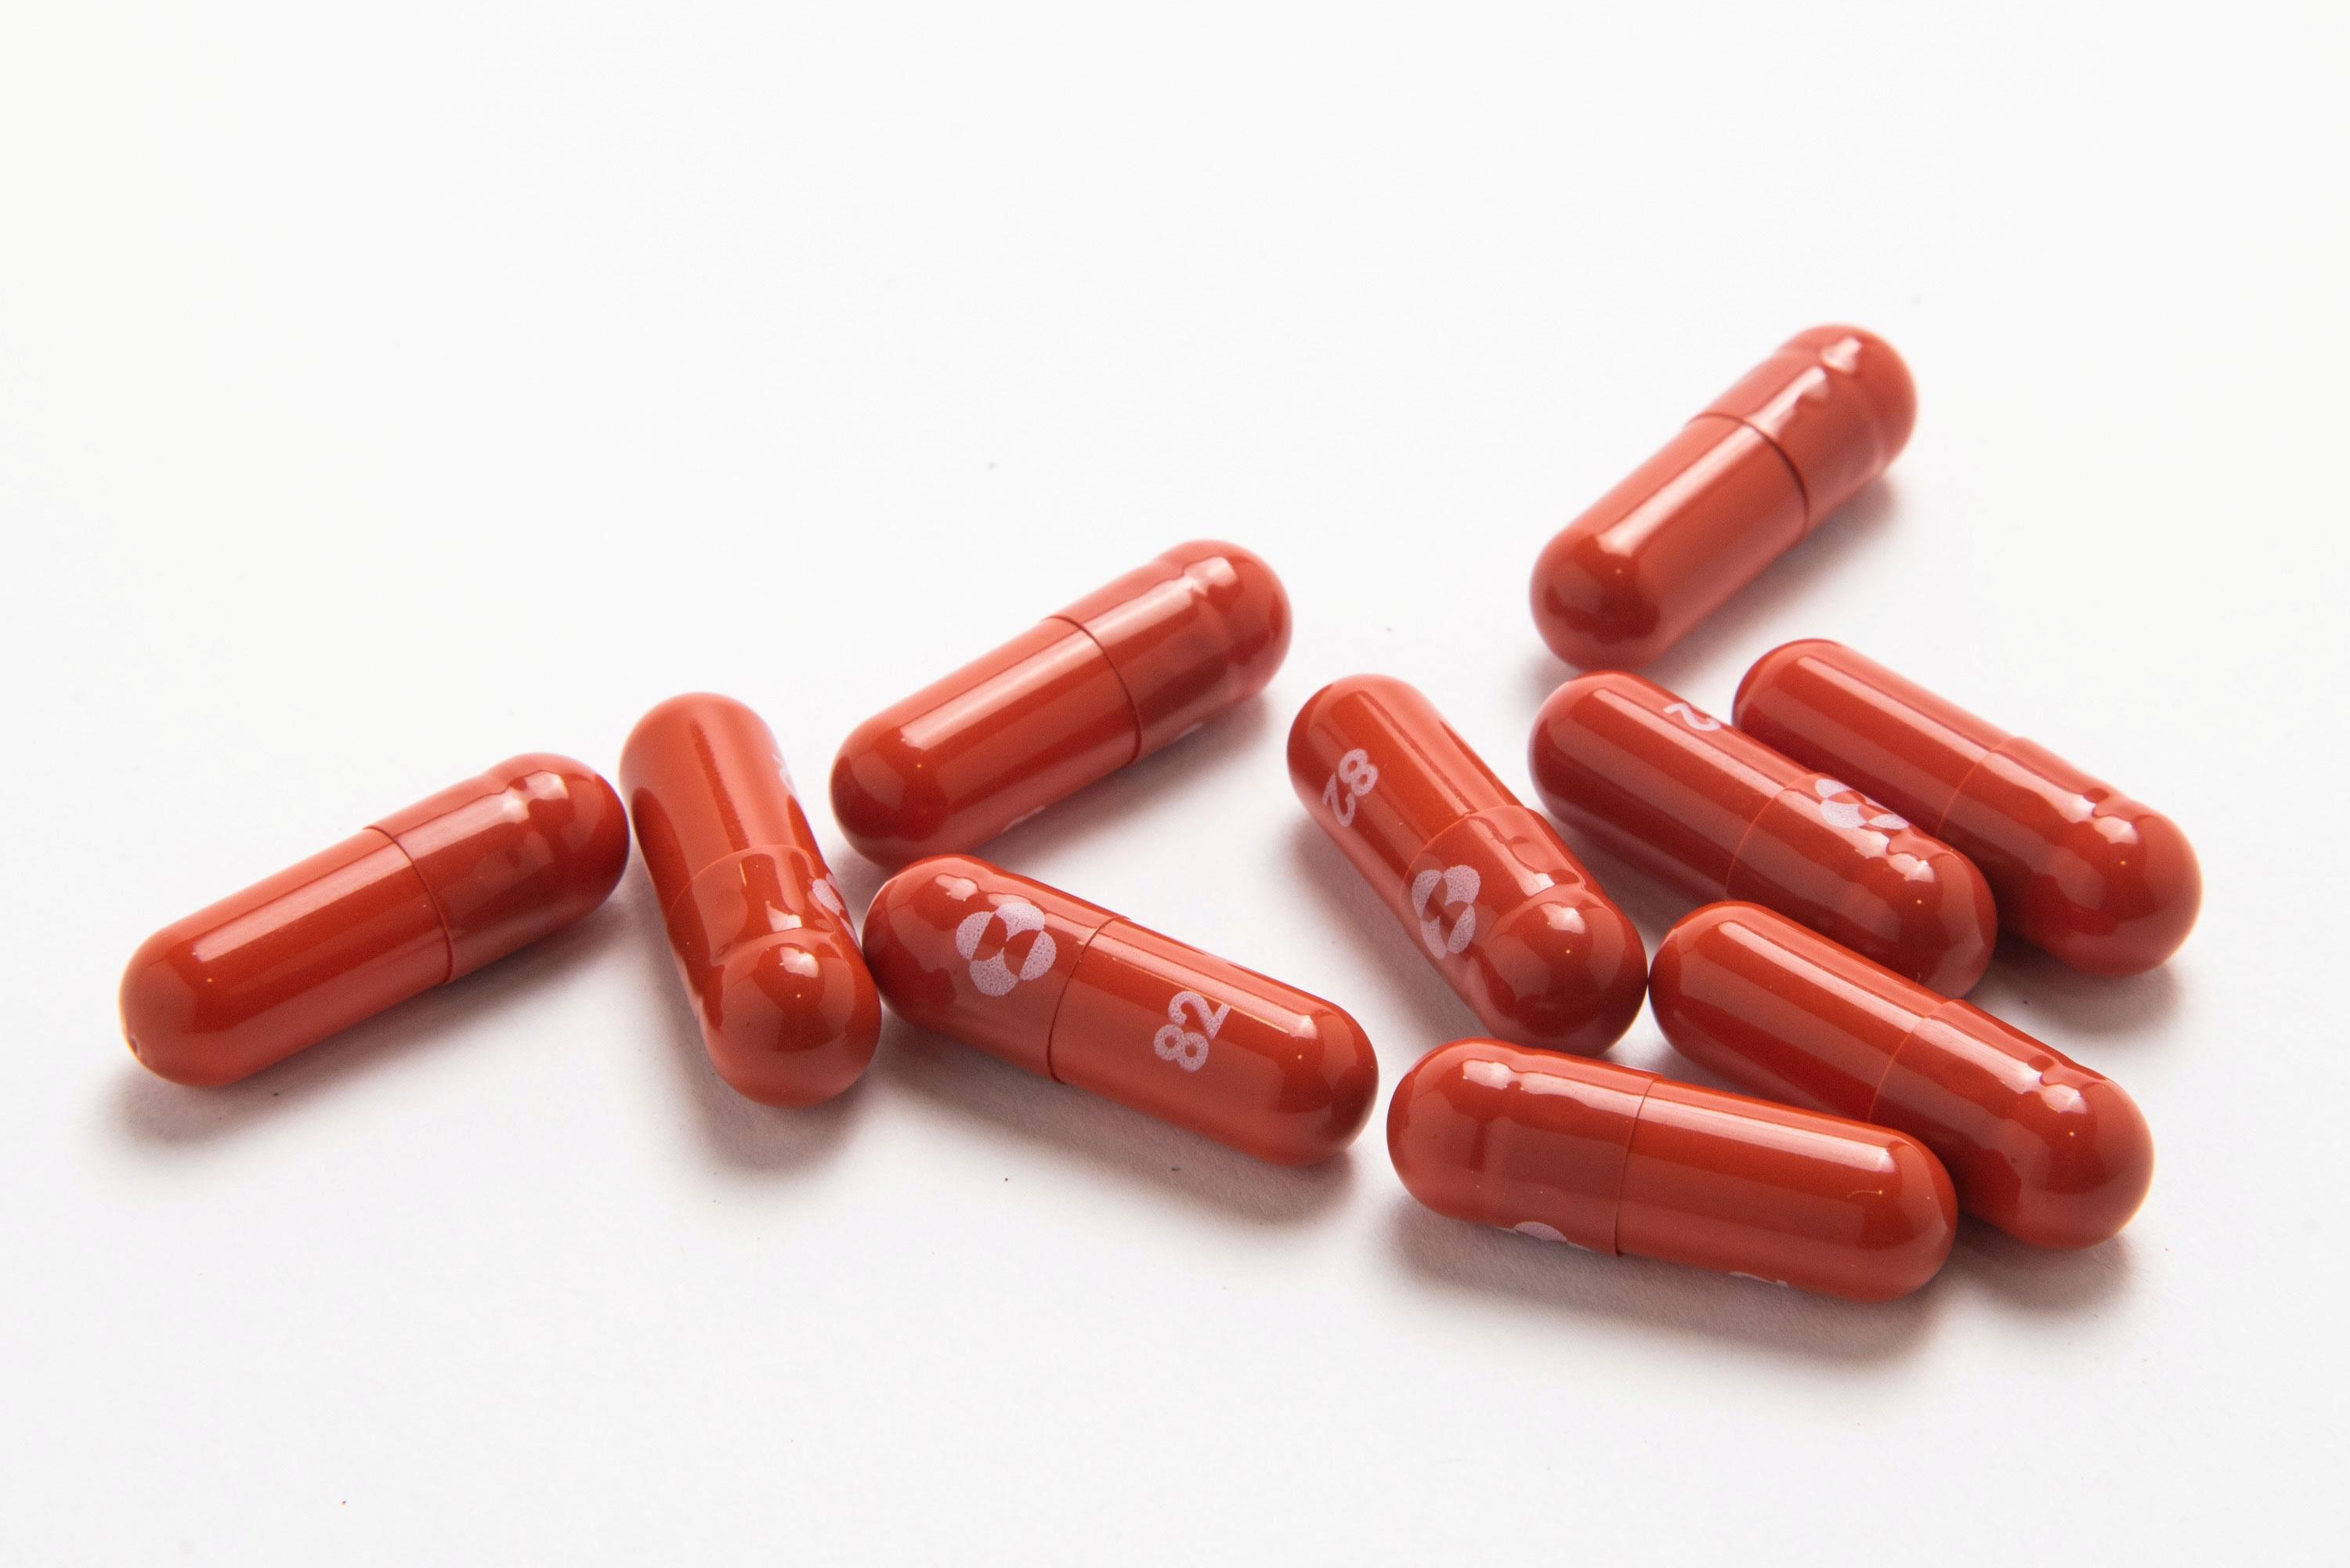 Merck COVID-19 pil molnupiravir akan diproduksi oleh 27 pembuat obat GMA News Online